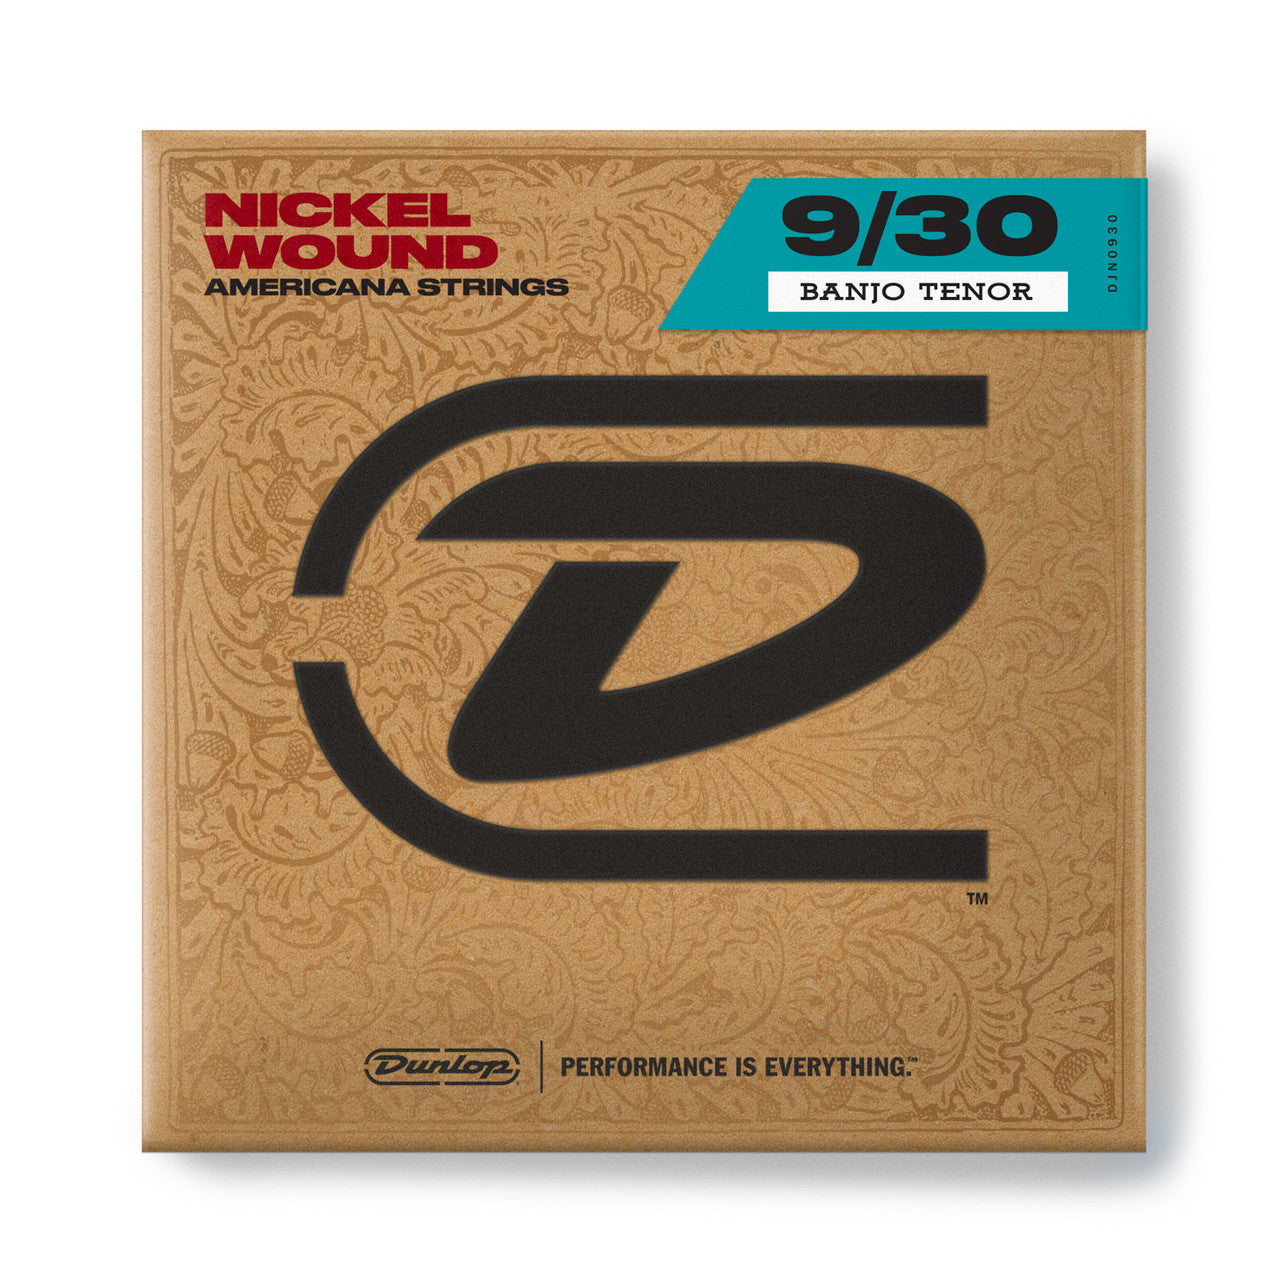 Dunlop Nickel Wound Loop End Banjo Strings 9-30 Gauge | Tenor